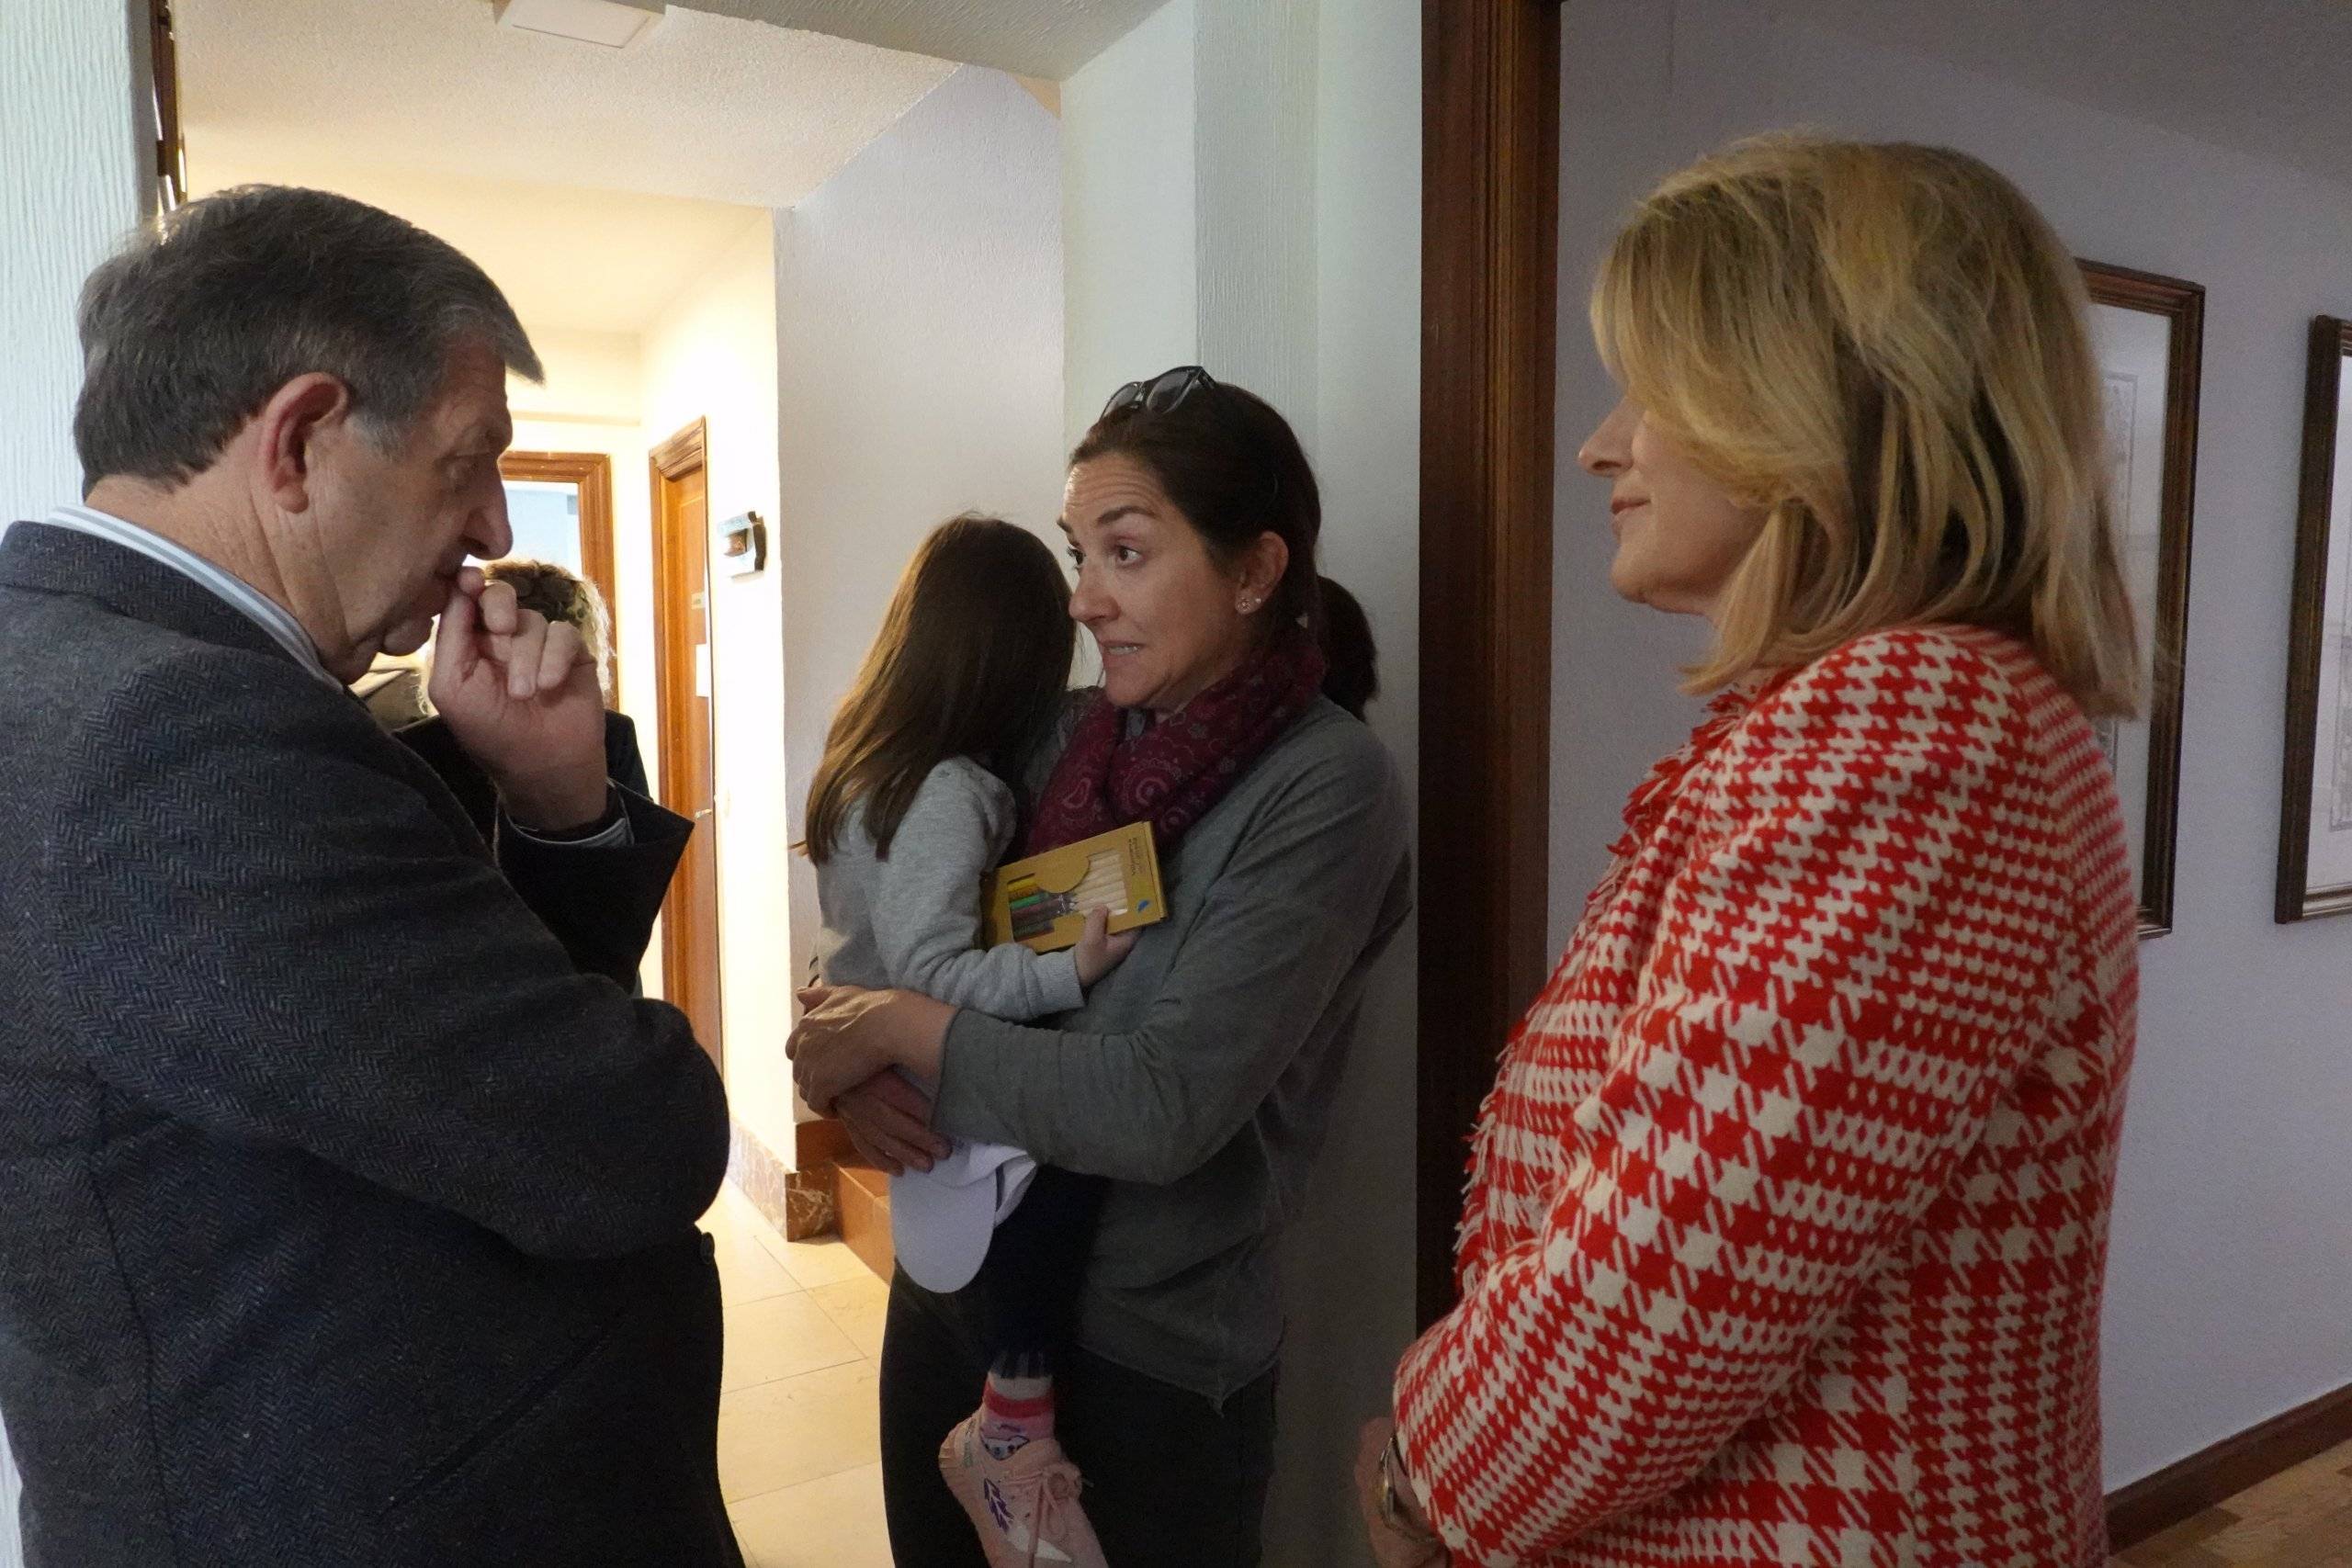 El regidor villanovense y la directora la presidenta de la fundación, María Matos, hablando con la directora de la misma.